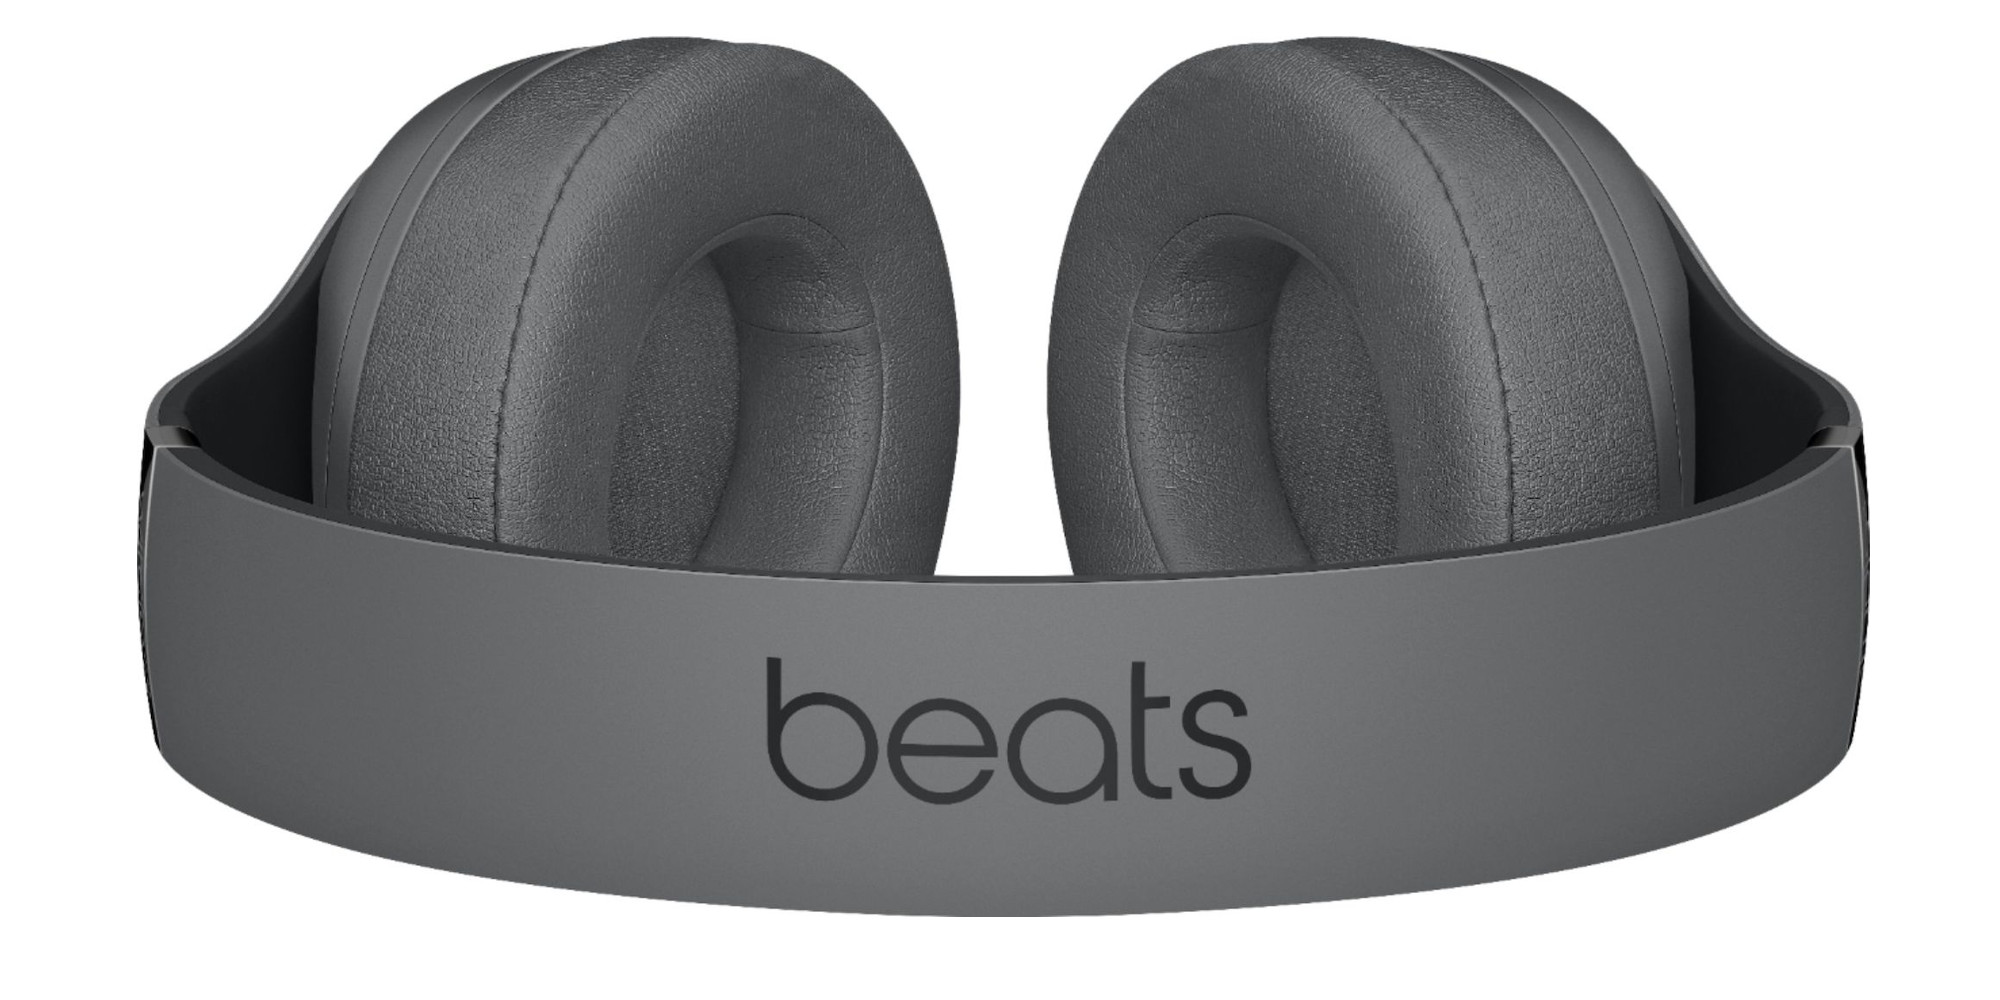 beats headphones $150